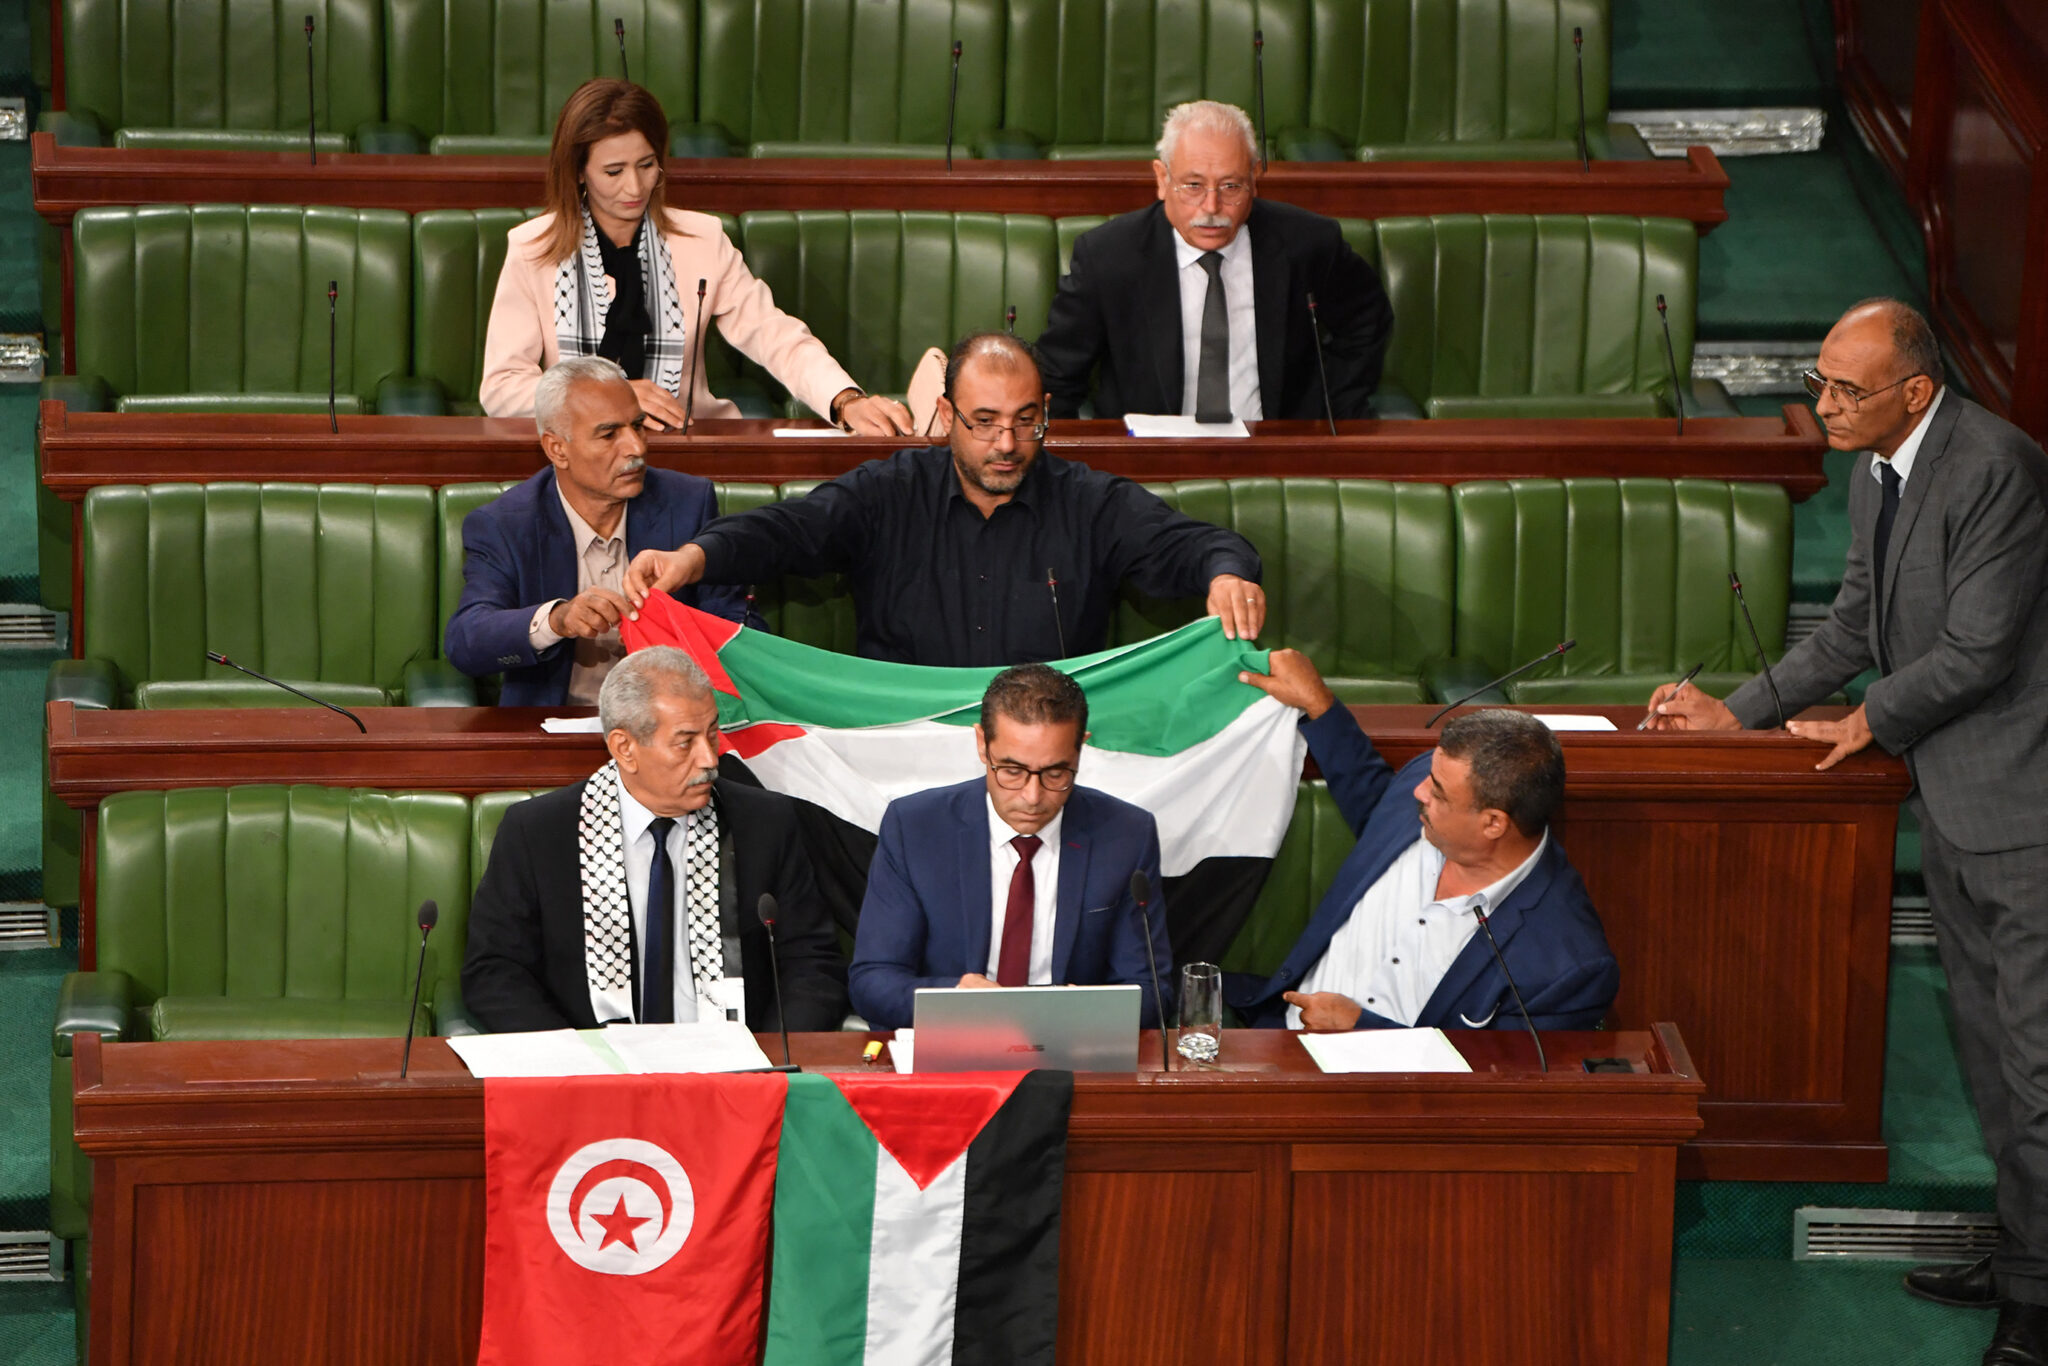 Τυνησία: Προτάθηκε νομοσχέδιο με το οποίο ποινικοποιείται η εξομάλυνση των σχέσεων με το Ισραήλ,